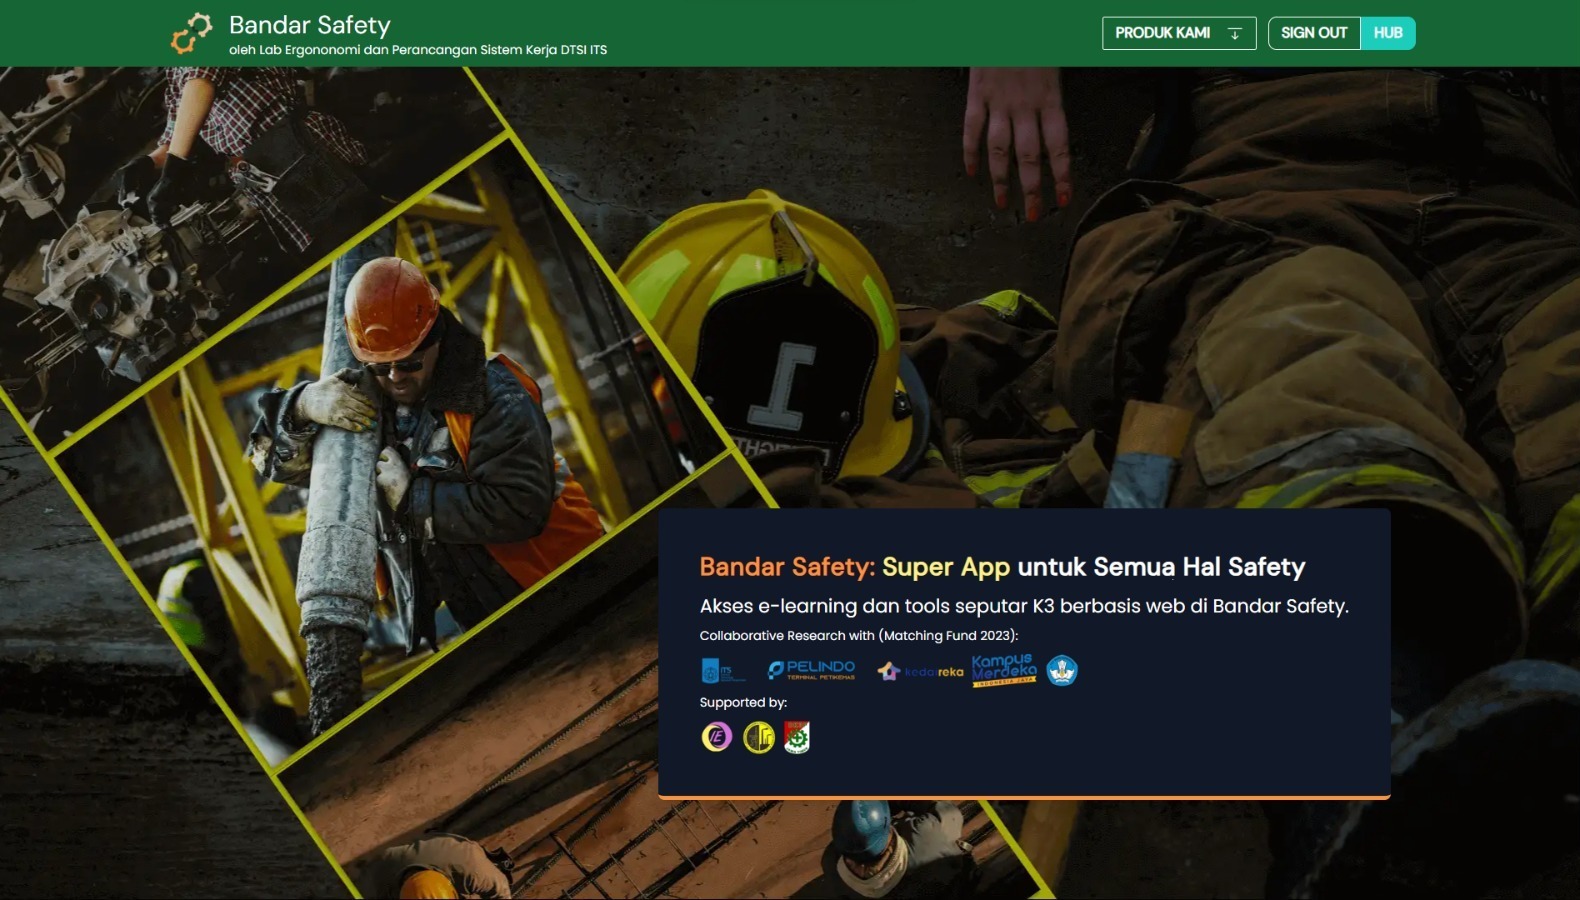 Tampilan awal laman Bandar Safety yang mengintegrasikan berbagai fitur untuk mengatasi risiko K3 dalam perusahaan